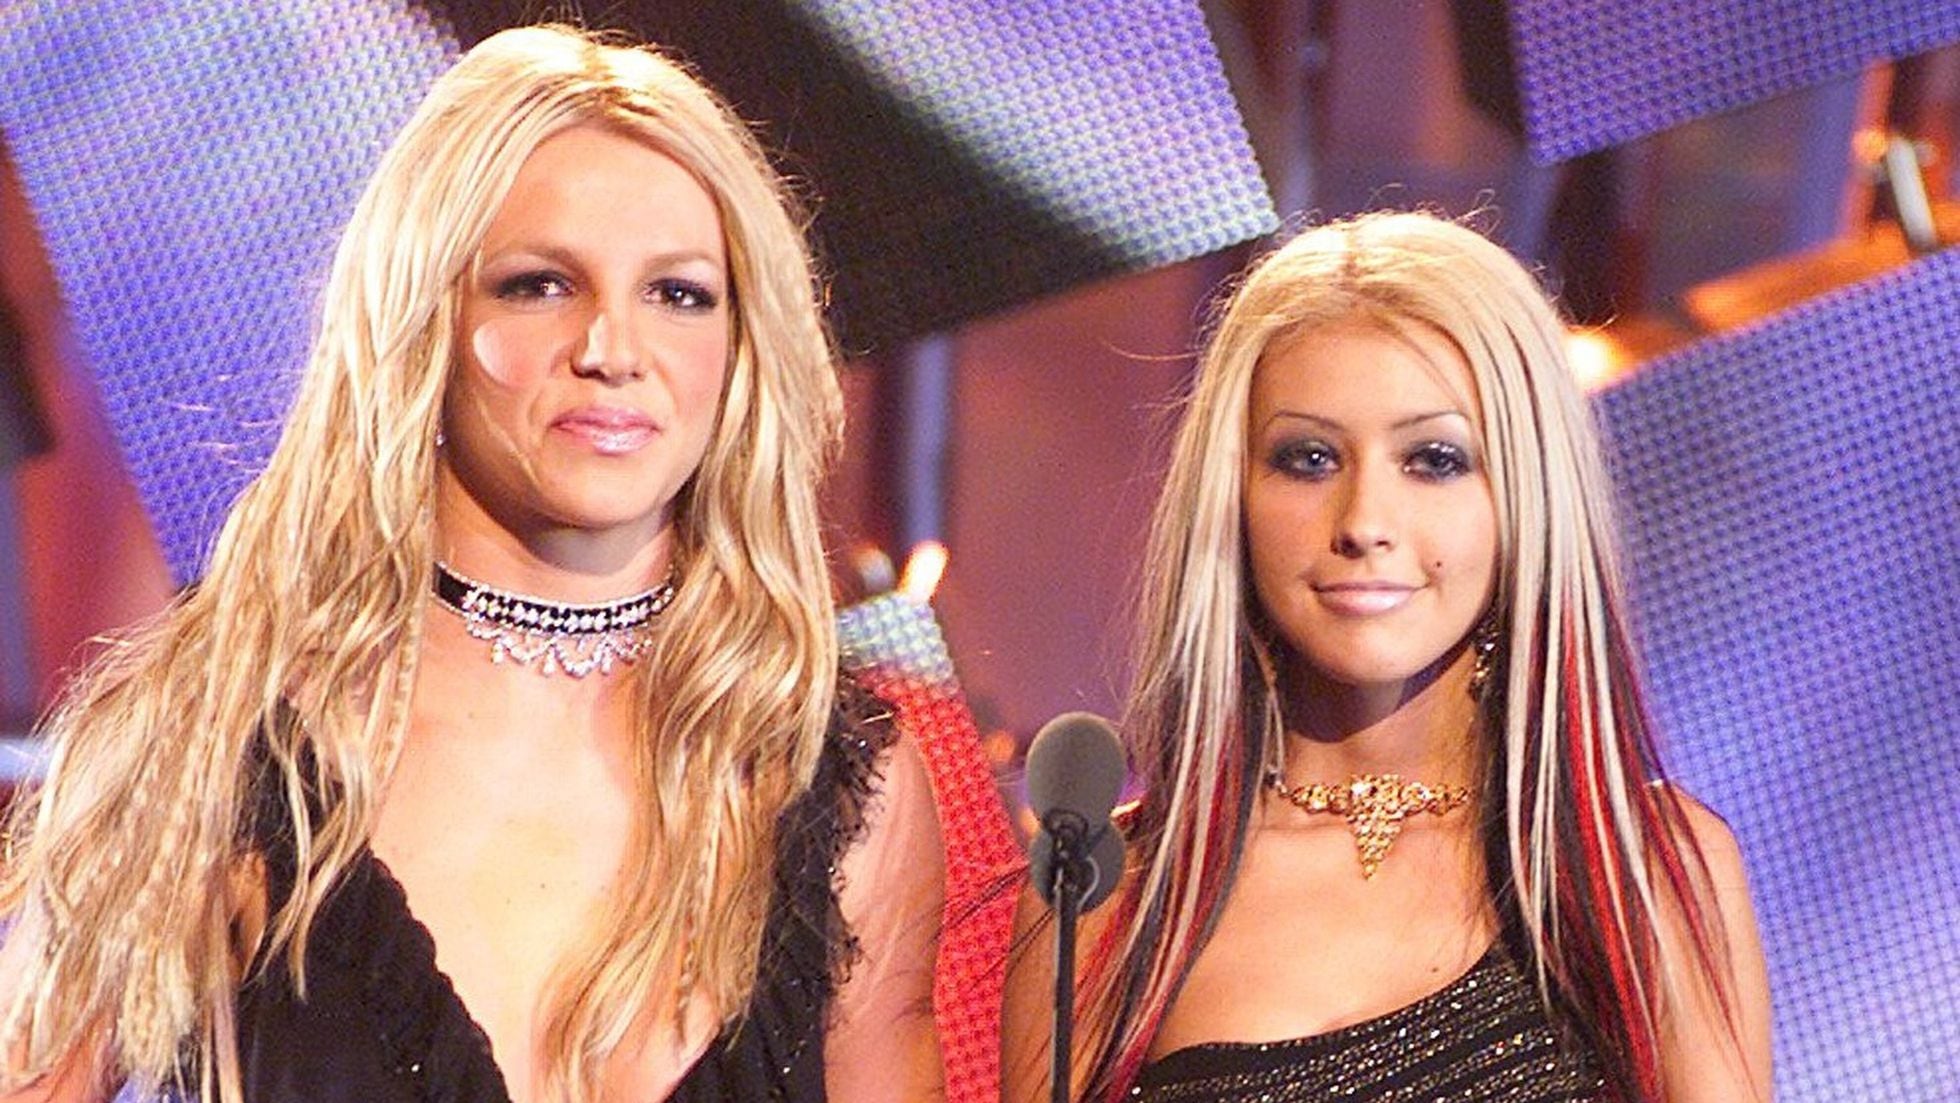 Christina Aguilera apoya a Britney Spears: “Toda mujer debe tener derecho sobre su propio cuerpo, su sistema reproductivo” | Gente | EL PAÍS